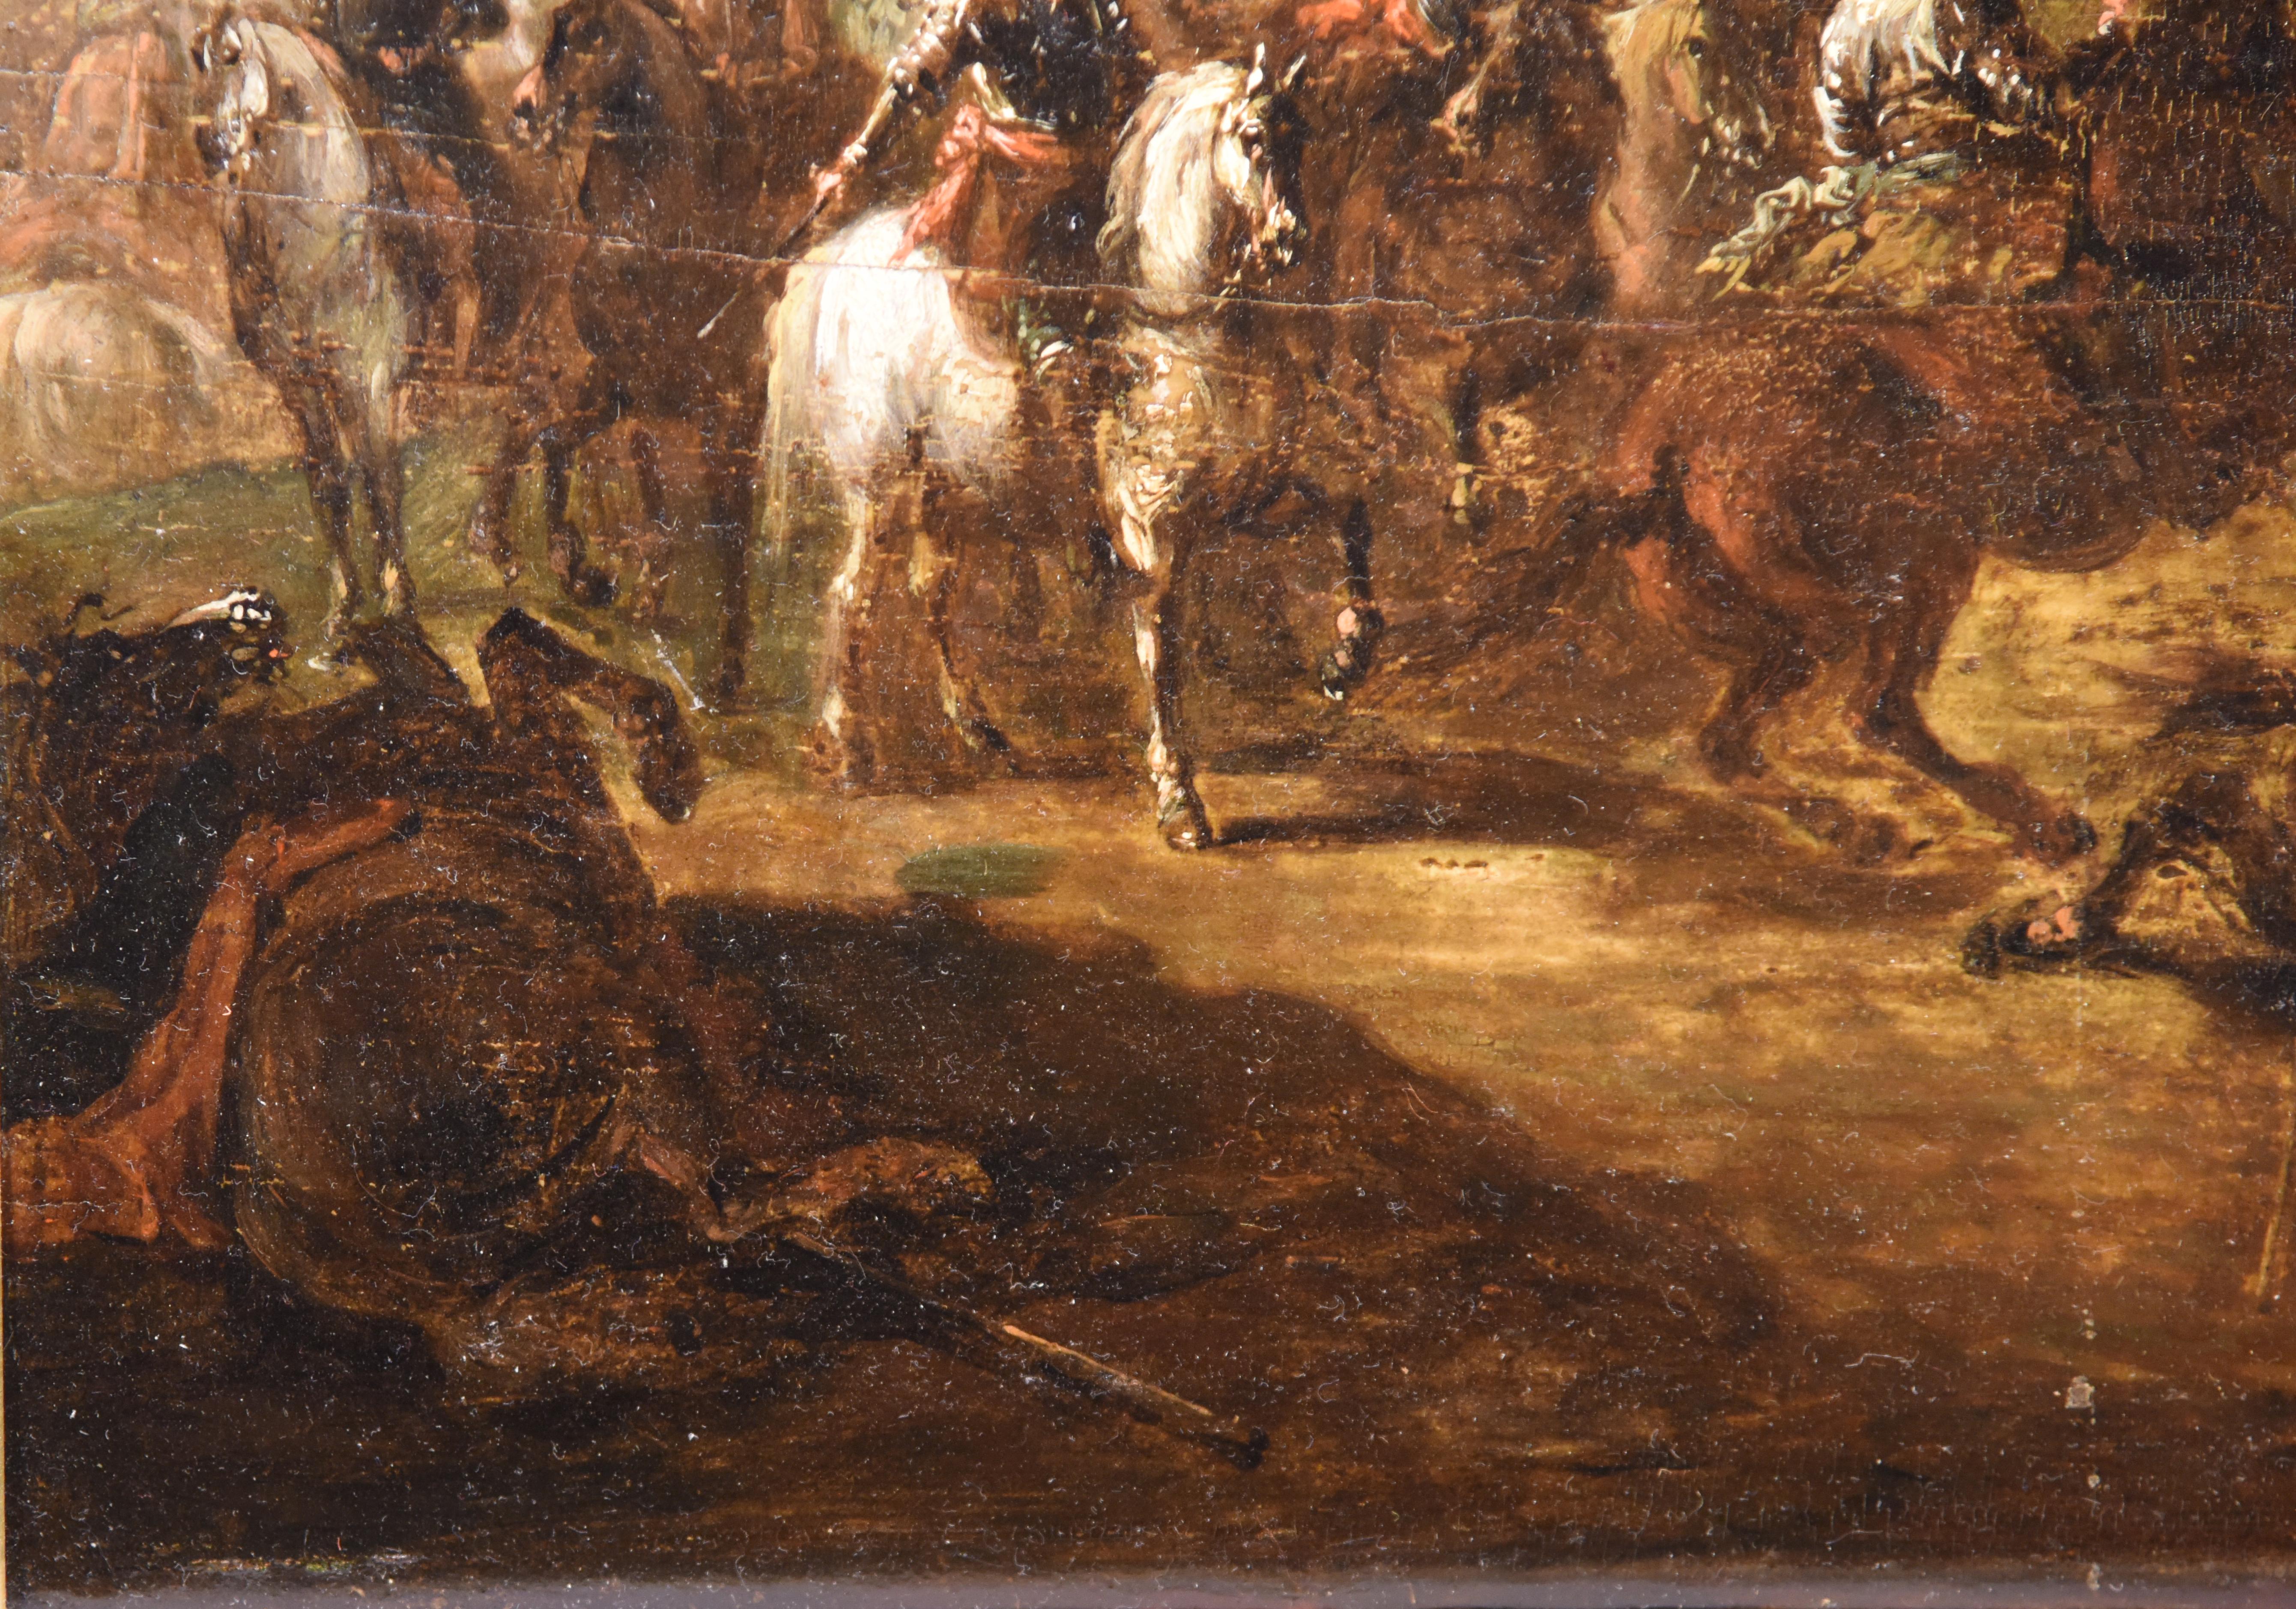 Ölgemälde mit dem Titel „Conquistadors nach der Schlacht“ aus dem 18. Jahrhundert 5